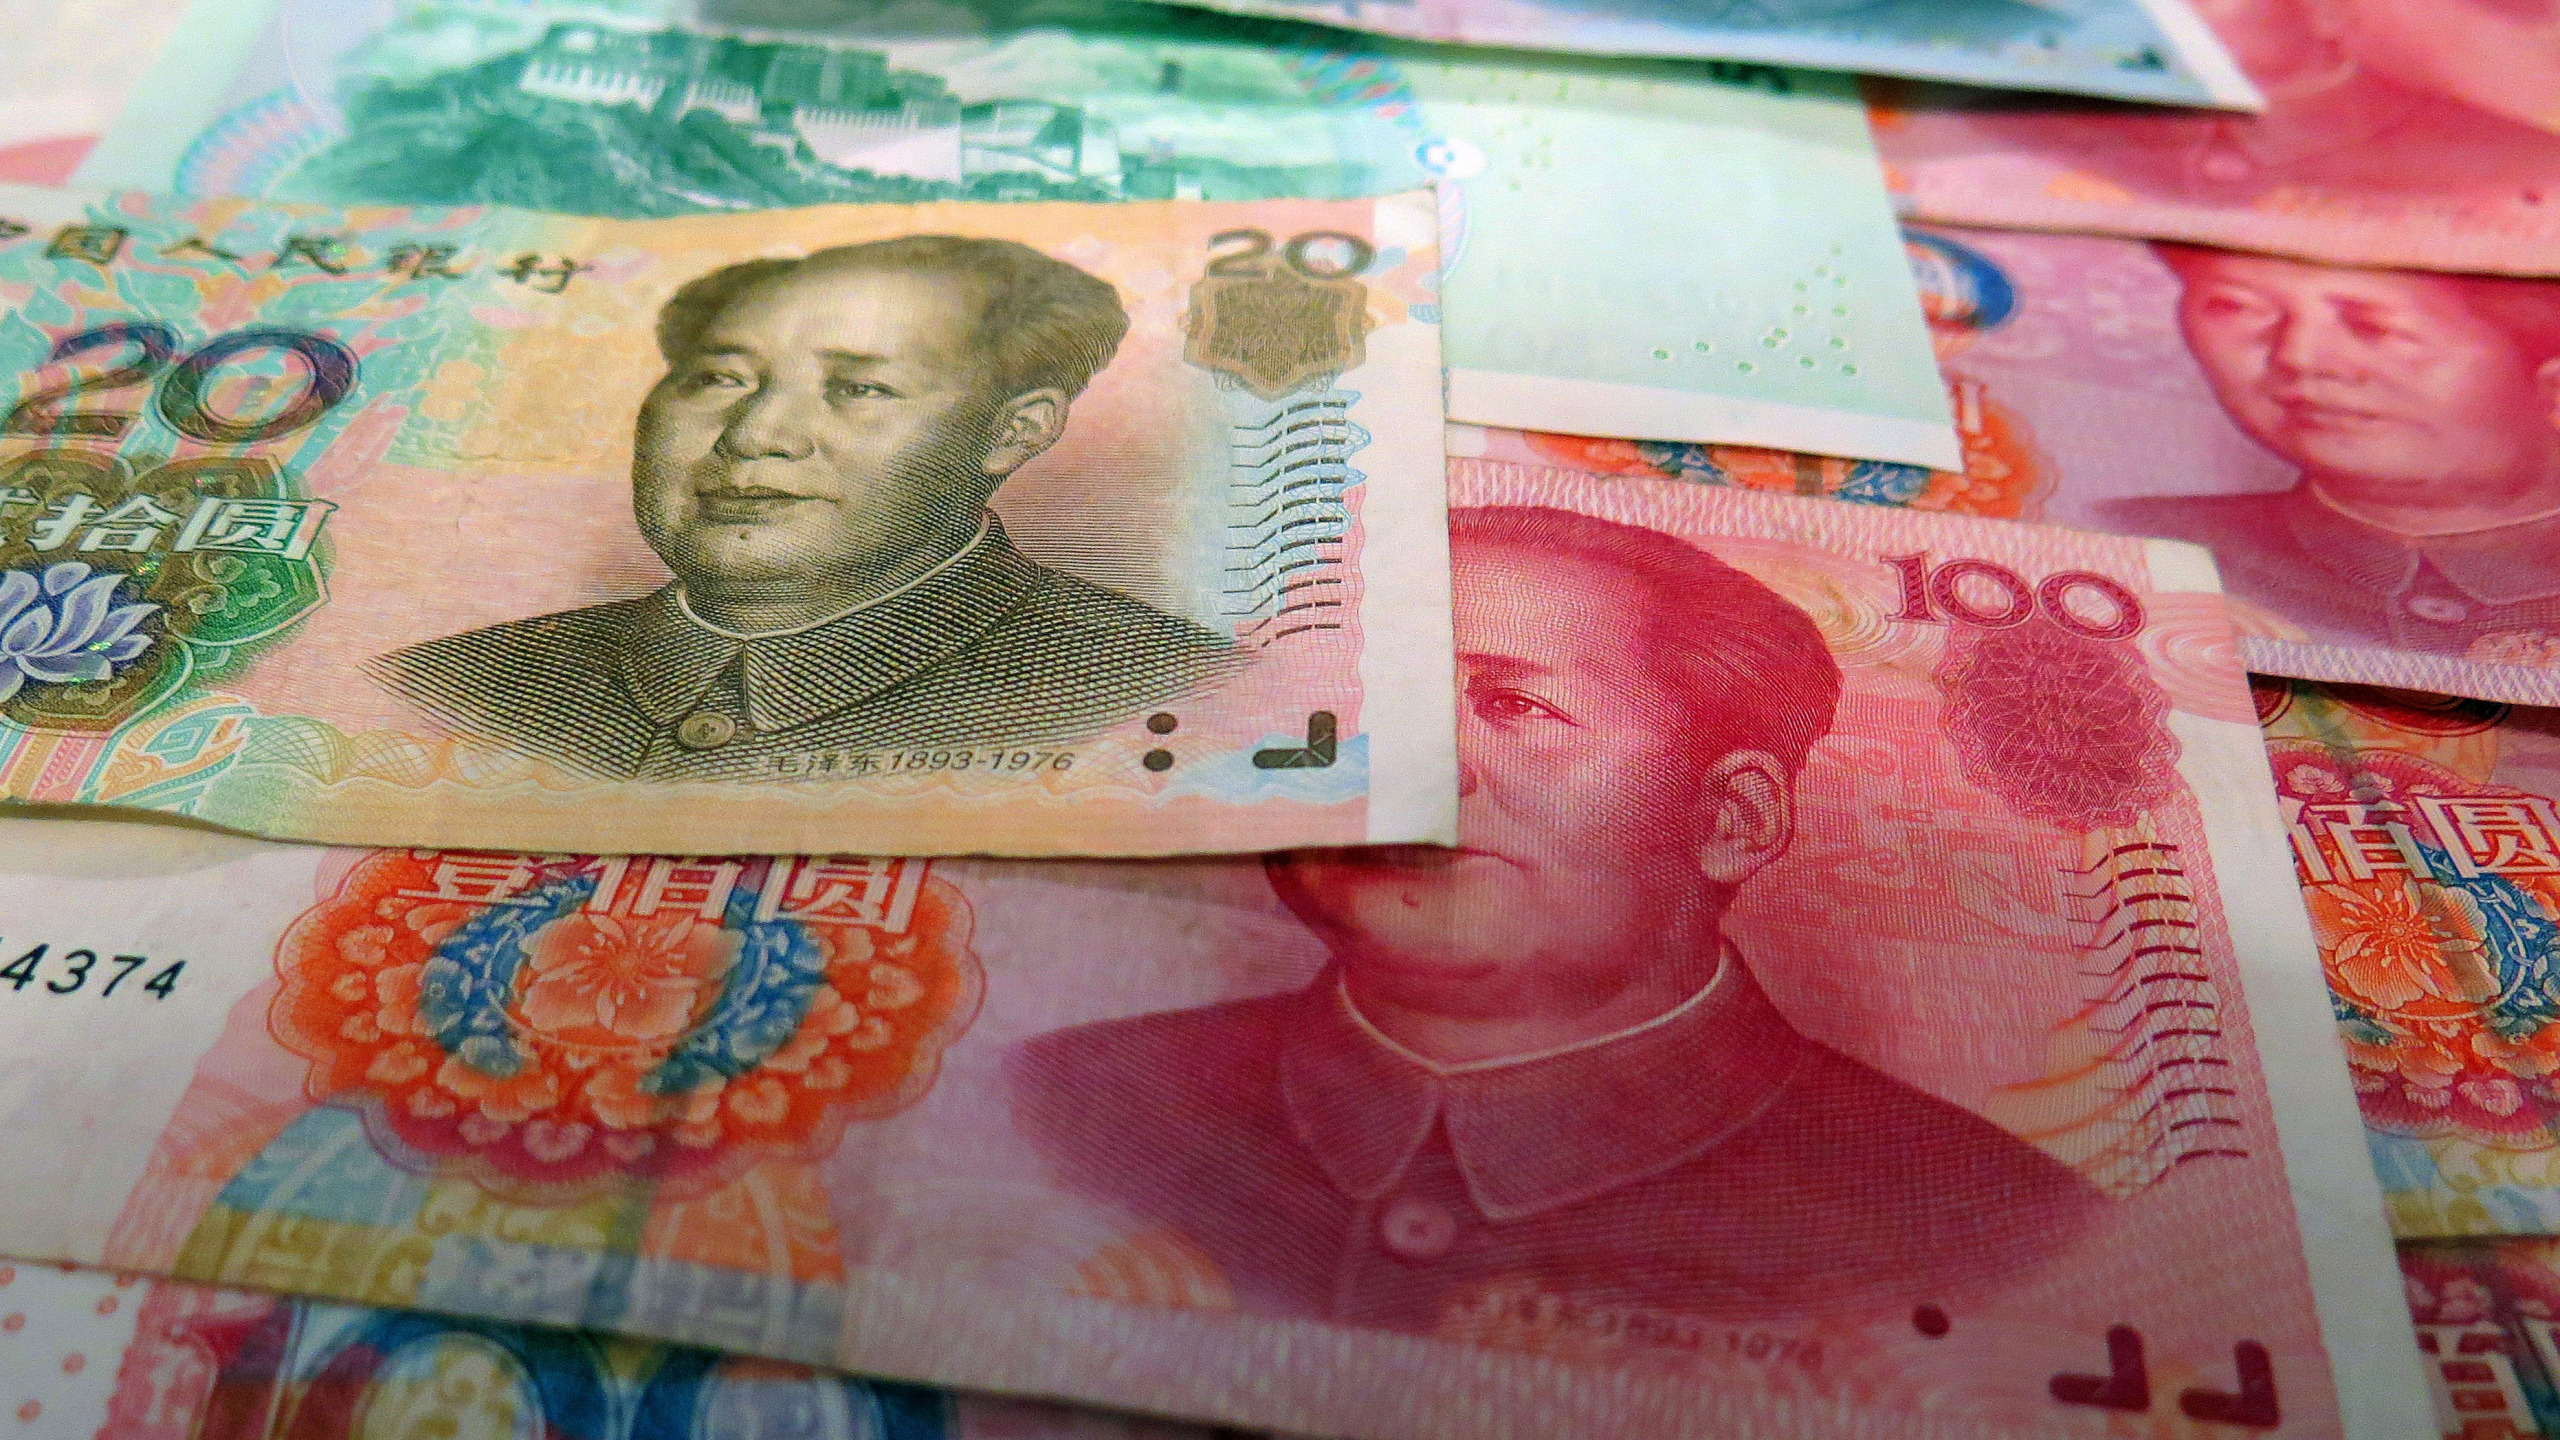 Скачать обои Китай, Деньги, Валюта, Банкноты, Юань, 100 Юаней, Азиатские, 20 Юаней, раздел разное в разрешении 2560x1440